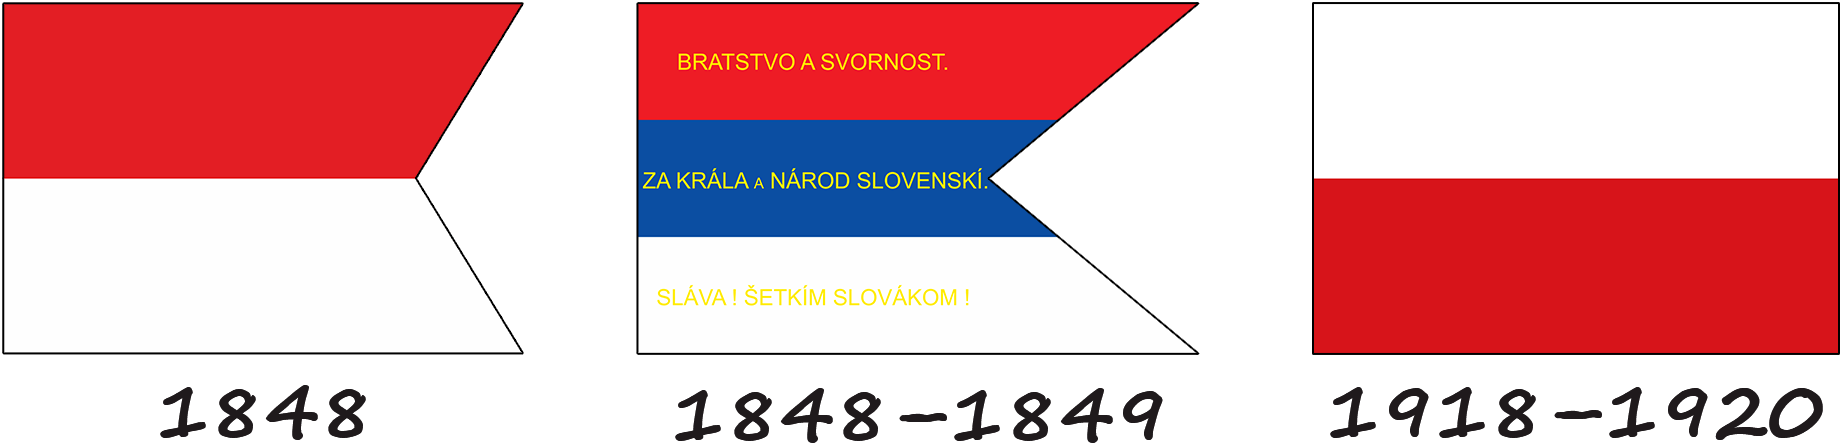 Histoire du drapeau slovaque